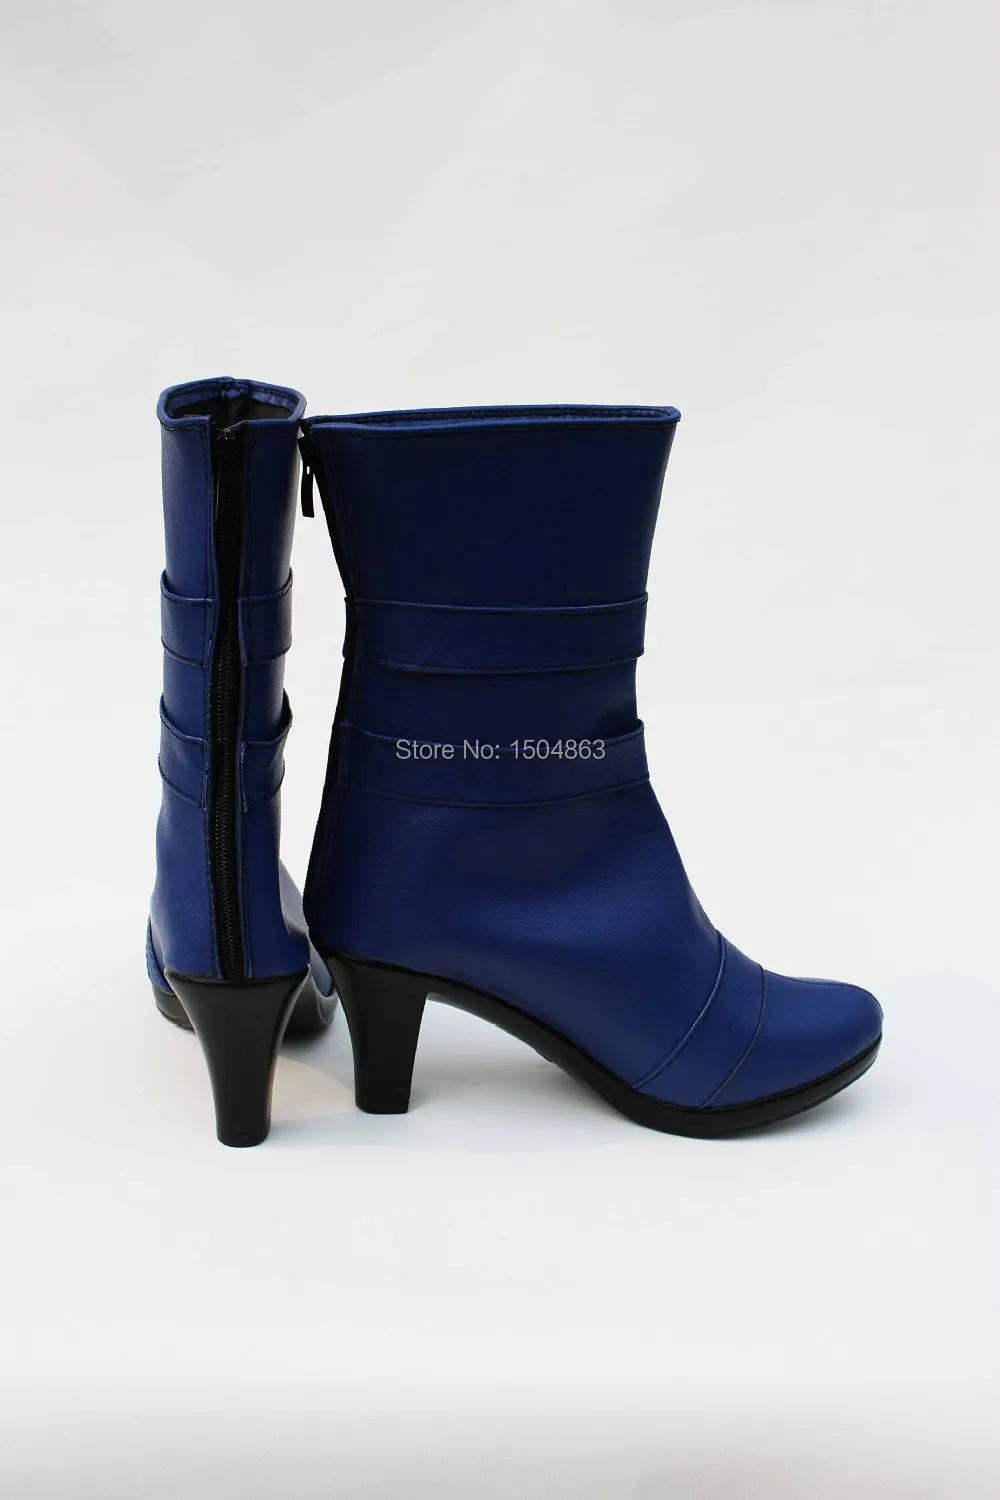 Аниме Tenoh Haruka/Сейлор Уран, обувь для косплея, синие ботинки,изготовленные на заказ